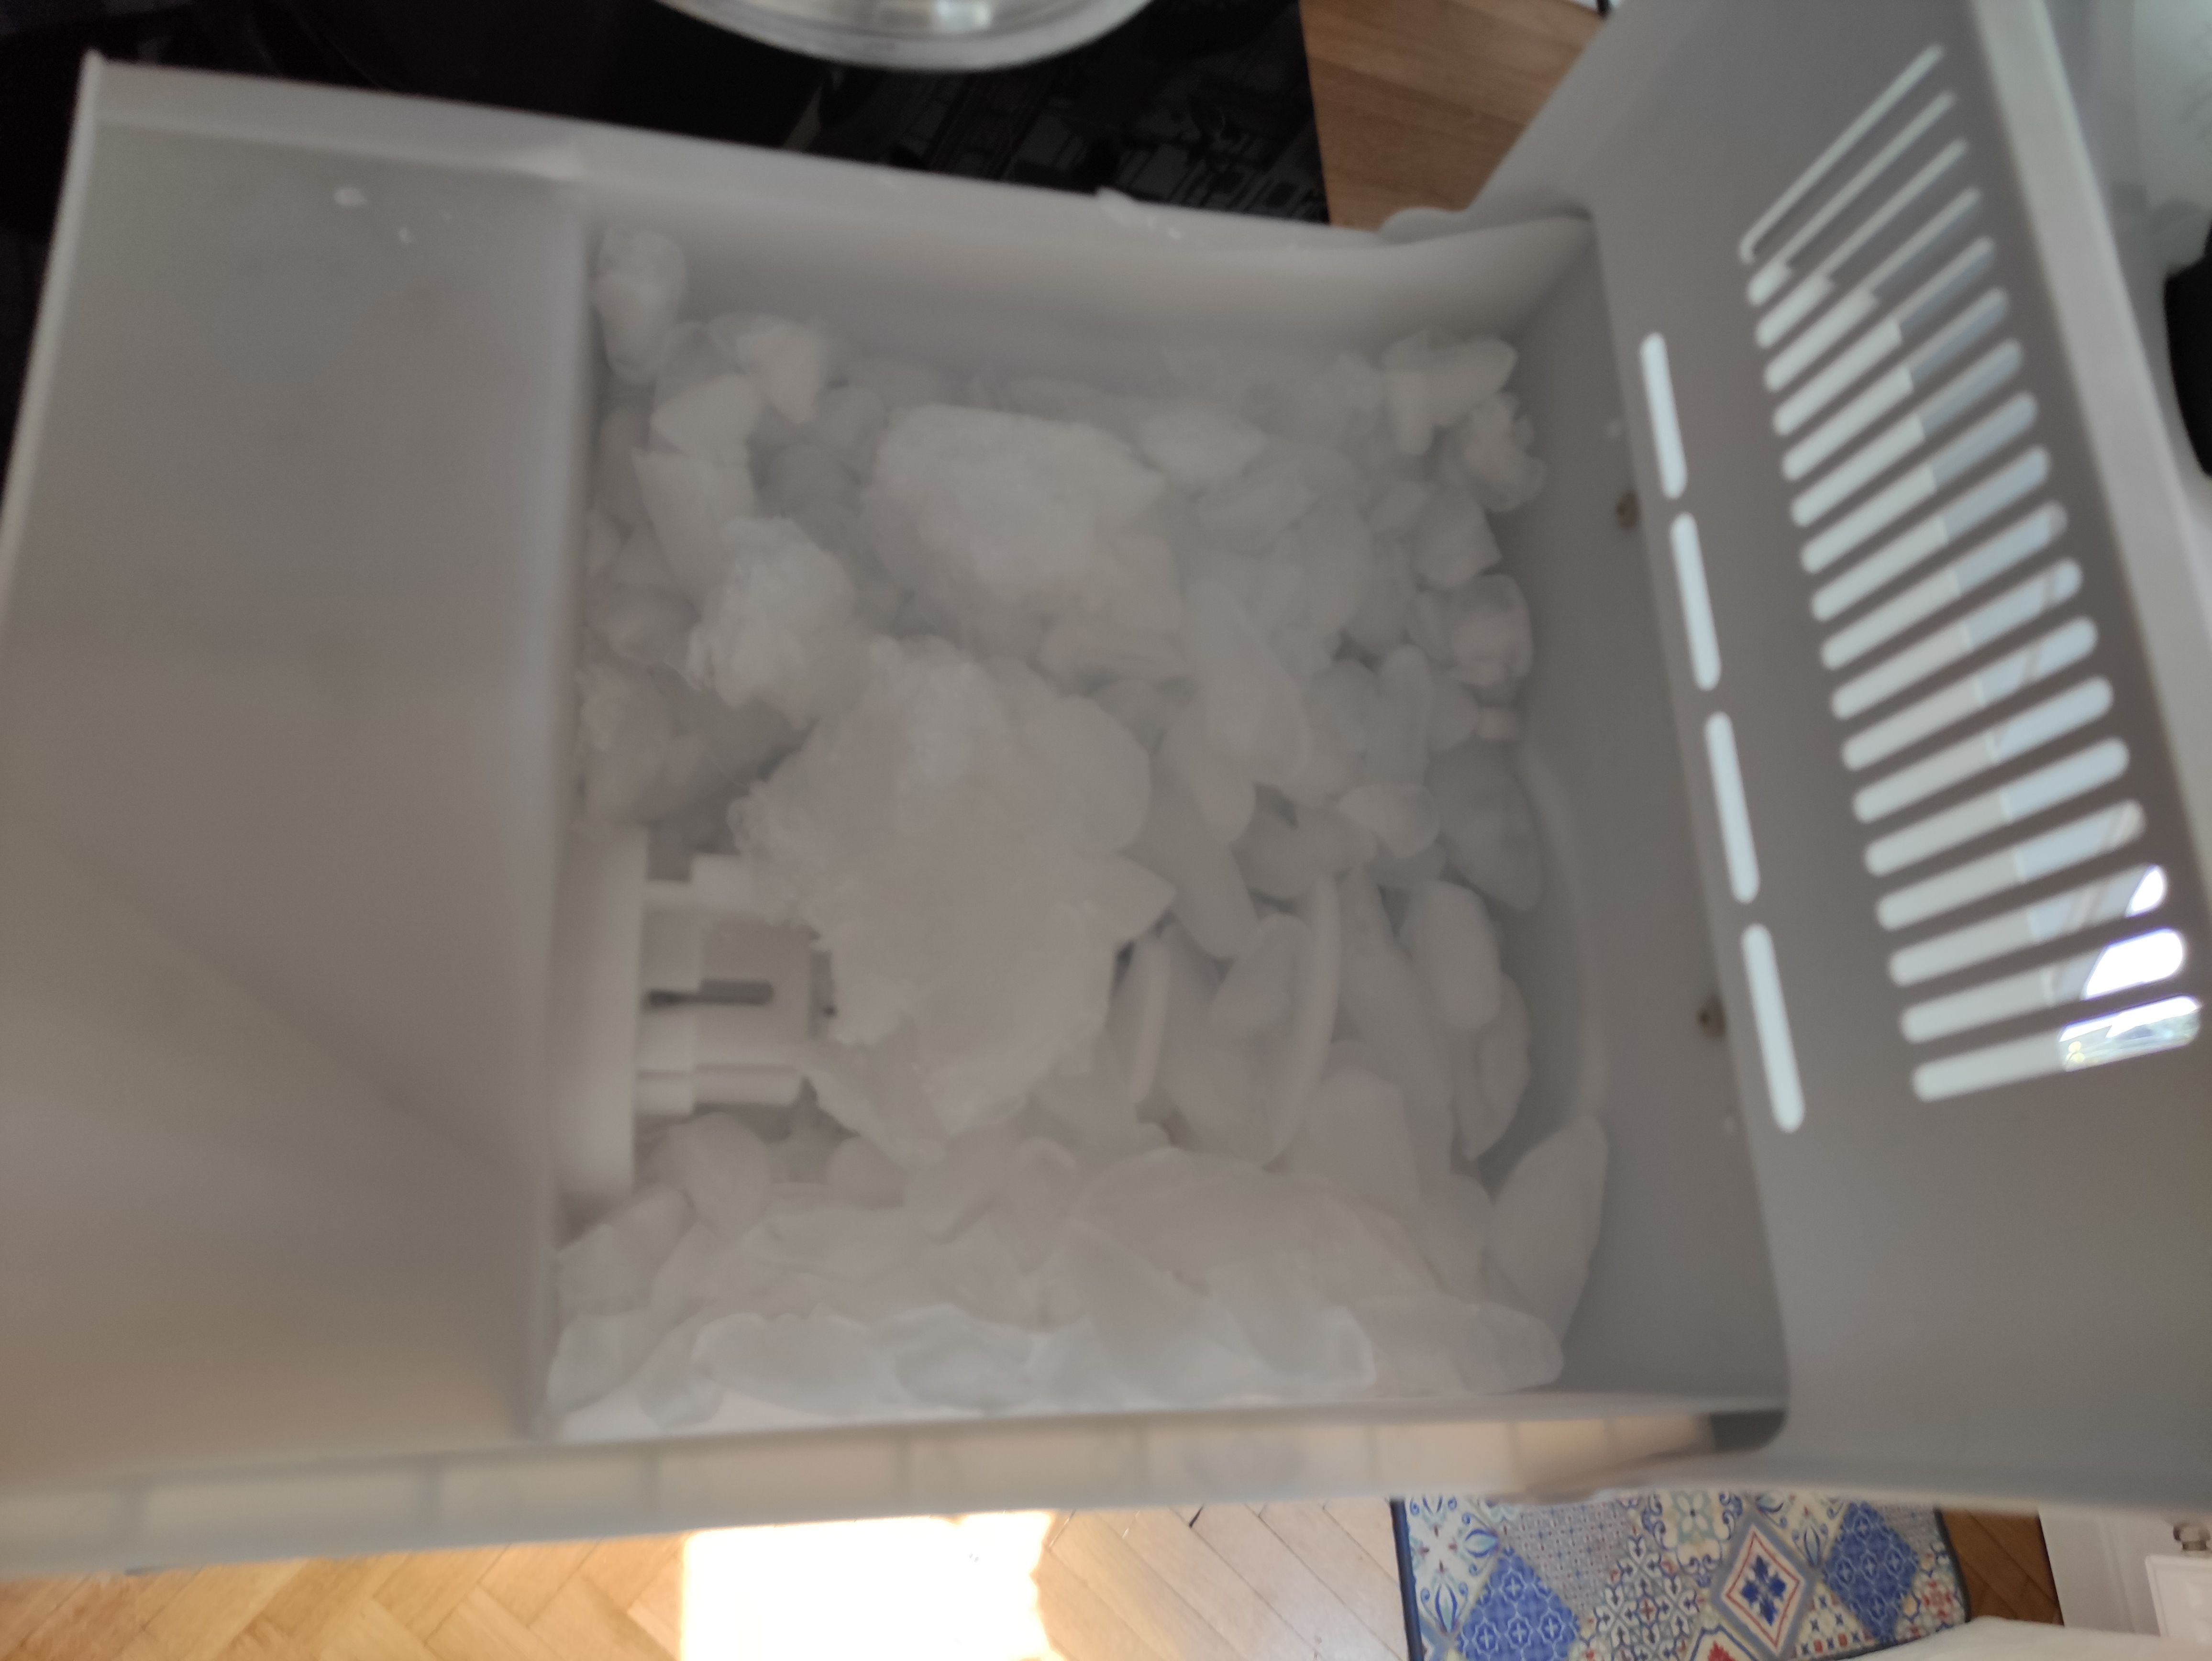 Kostkarka w lodówkach Side by Side - Samsung Community